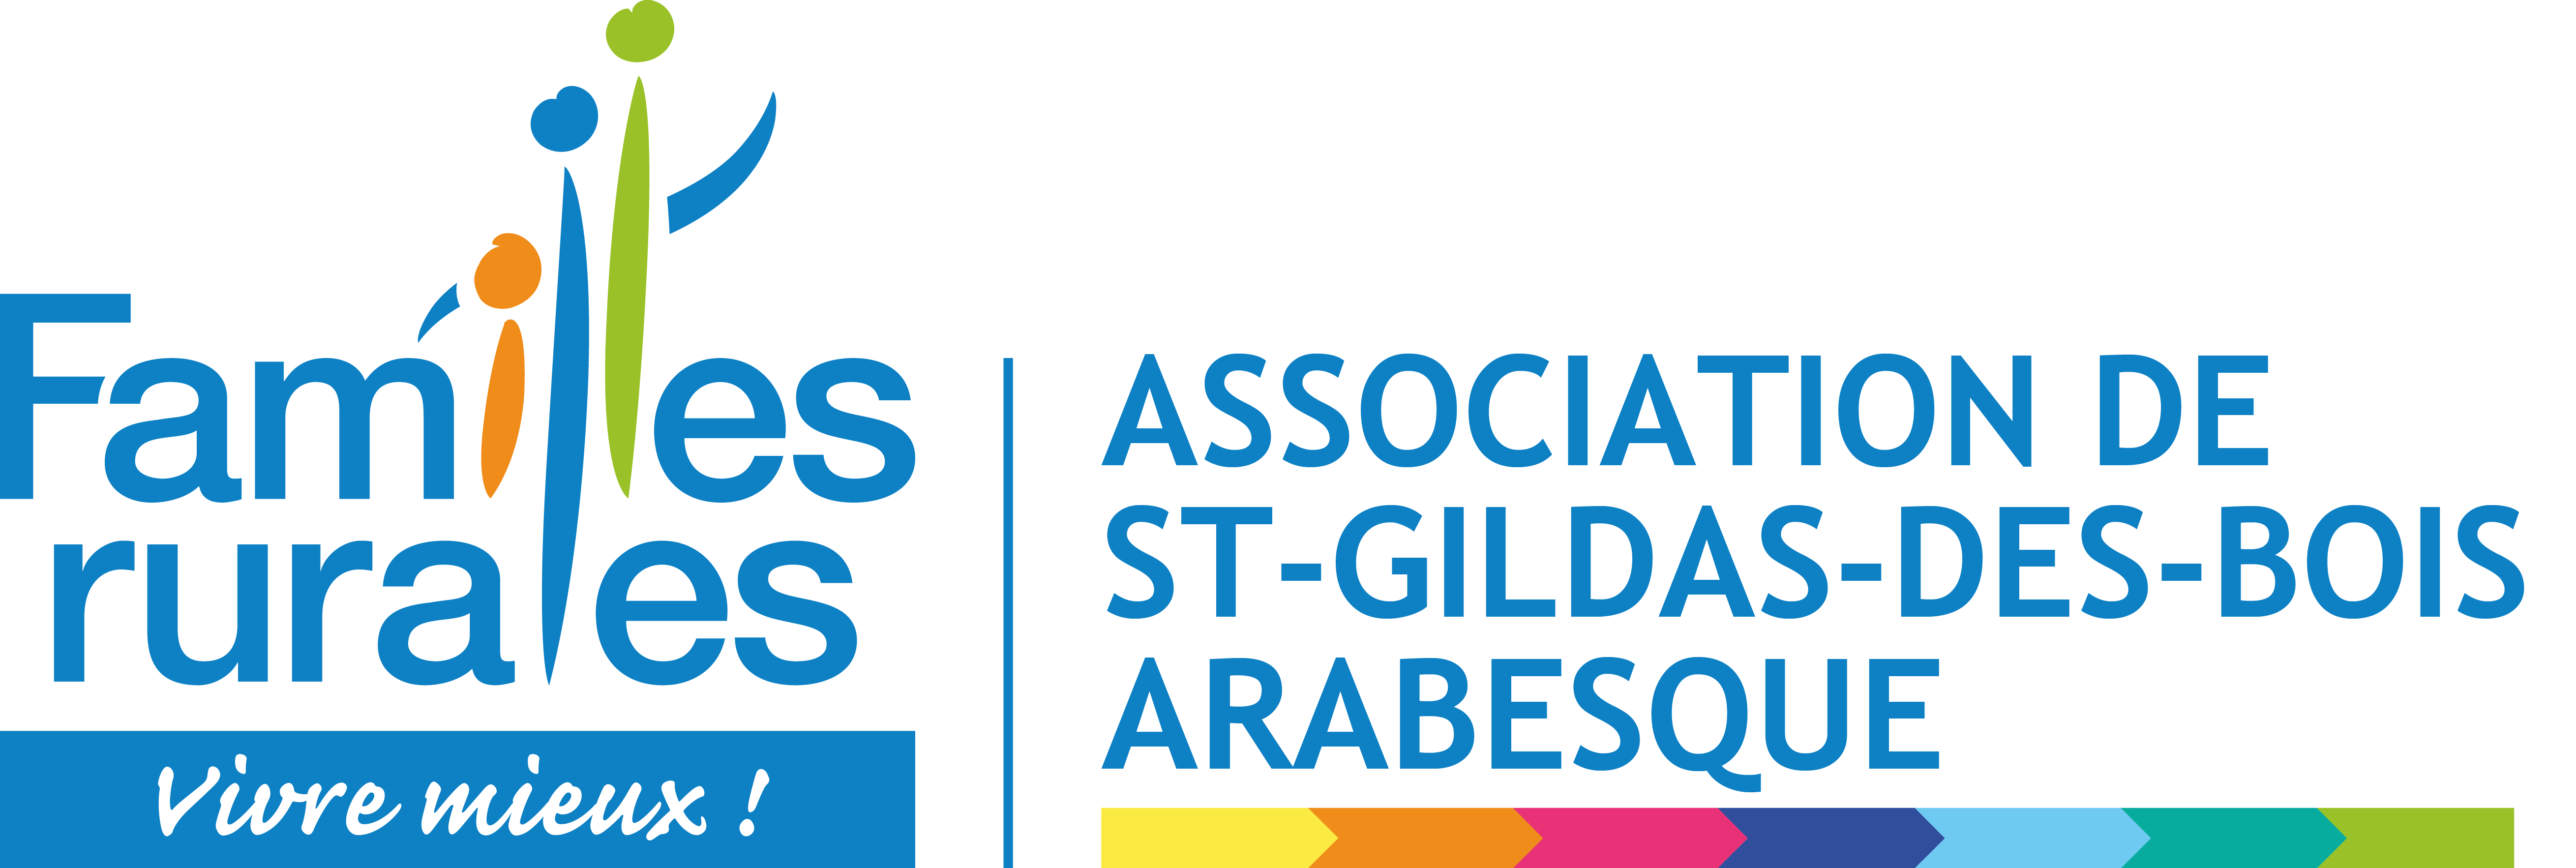 logo_ST_GILDAS_BOIS_ARABESQUE.png